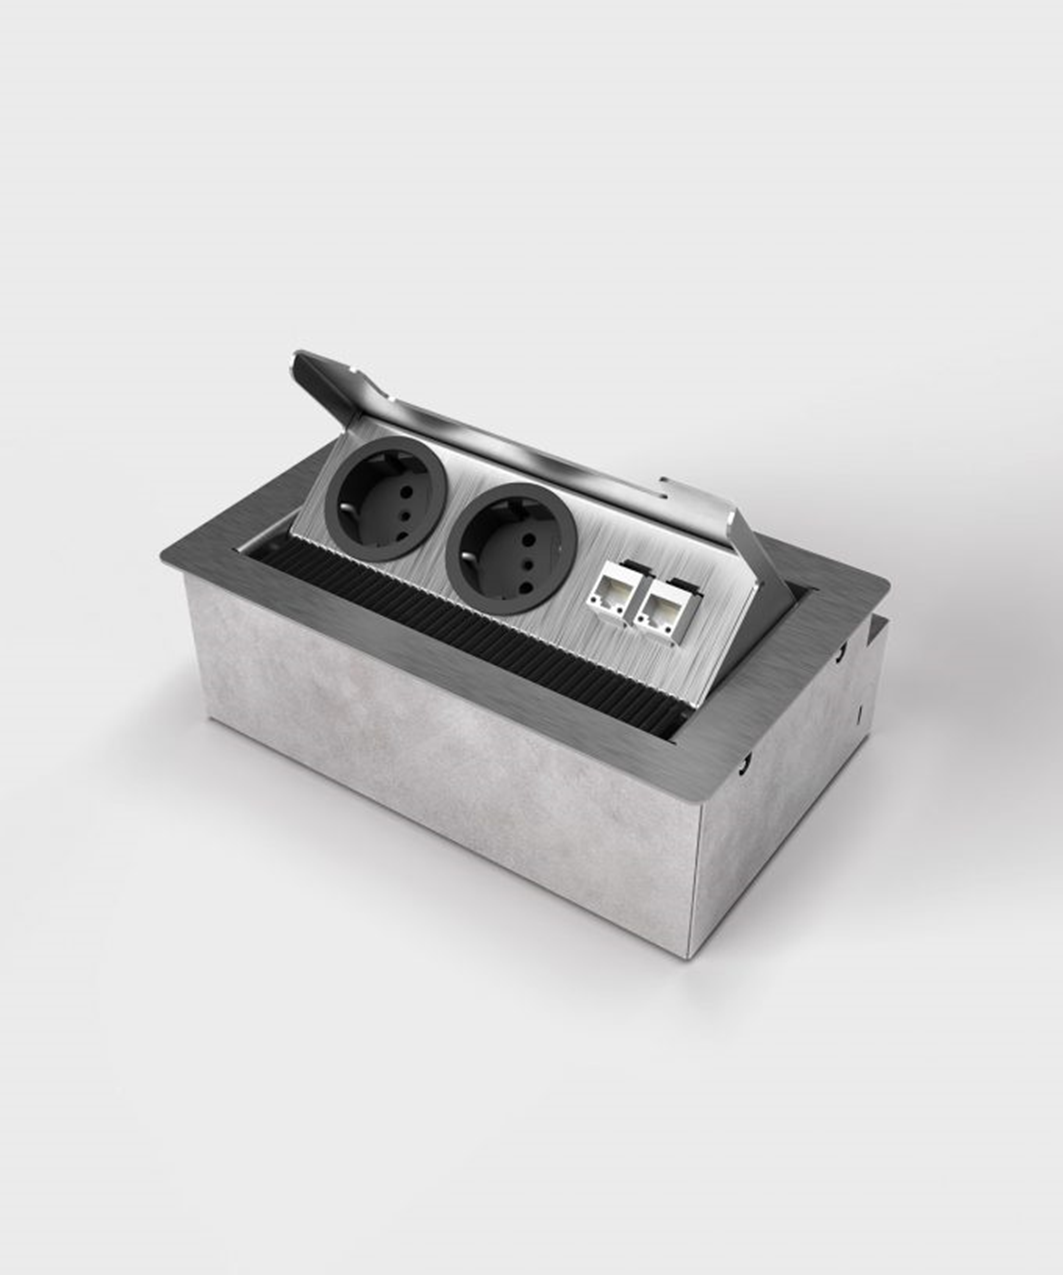 BS 3203E1 Anschlussmodul für Tisch- oder Bodenbereich, 3-fach, eckig, Klappdeckel aus Edelstahl, 2x Schutzkontakt-Steckdose, 1x RJ45 2-fach, inkl. Aufnahmebox